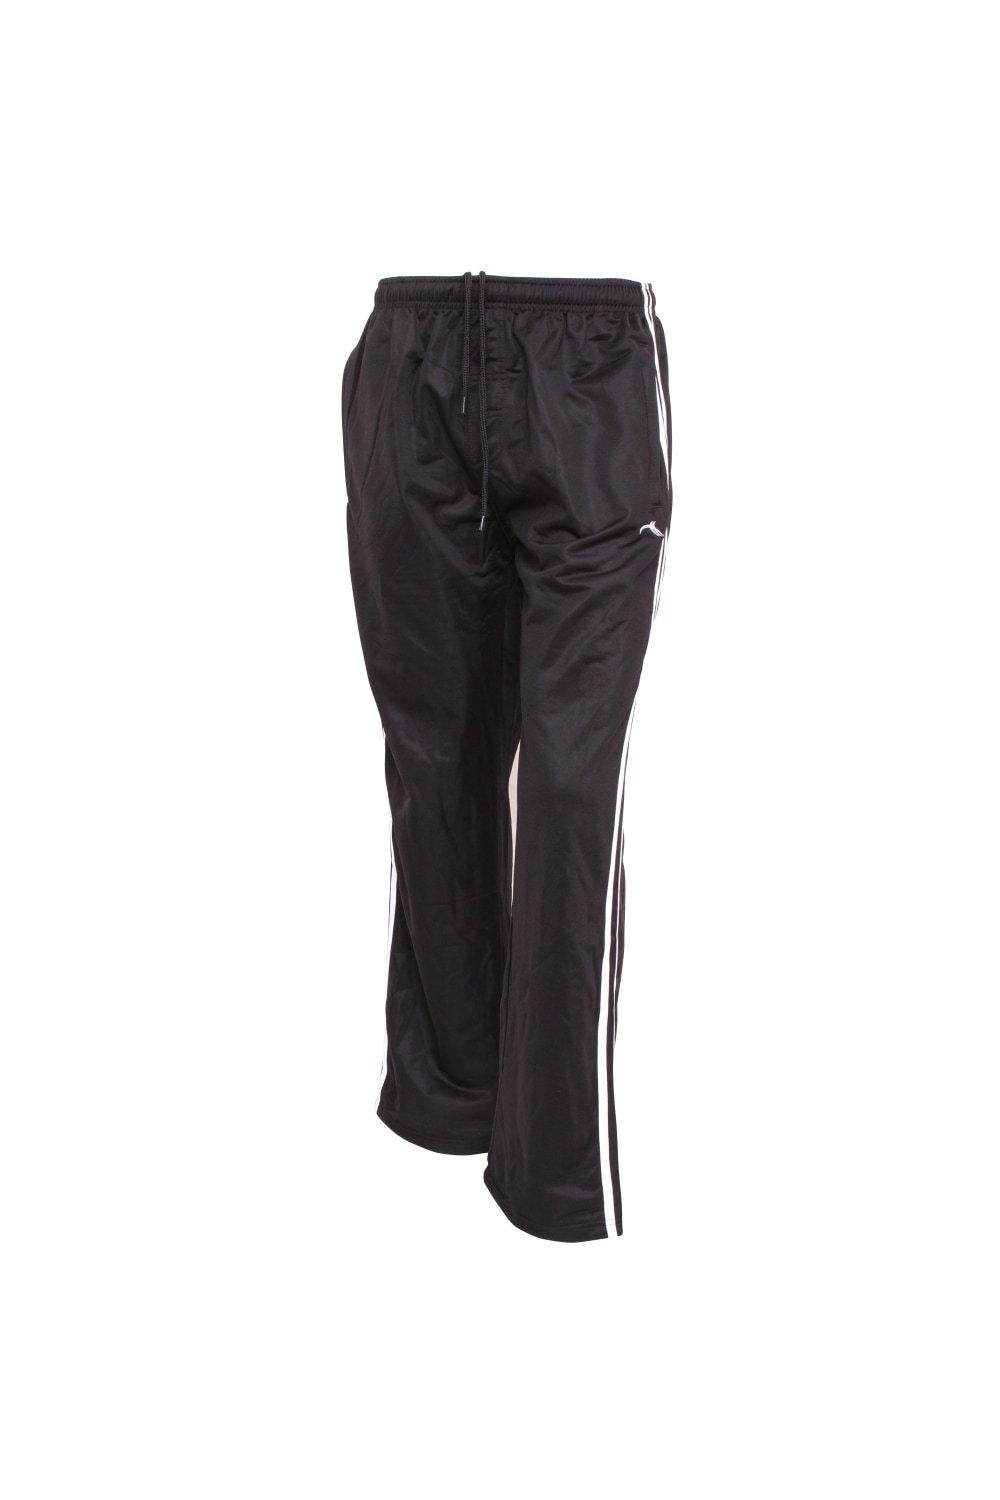 цена Спортивный костюм/спортивные штаны (с открытыми манжетами) Universal Textiles, черный